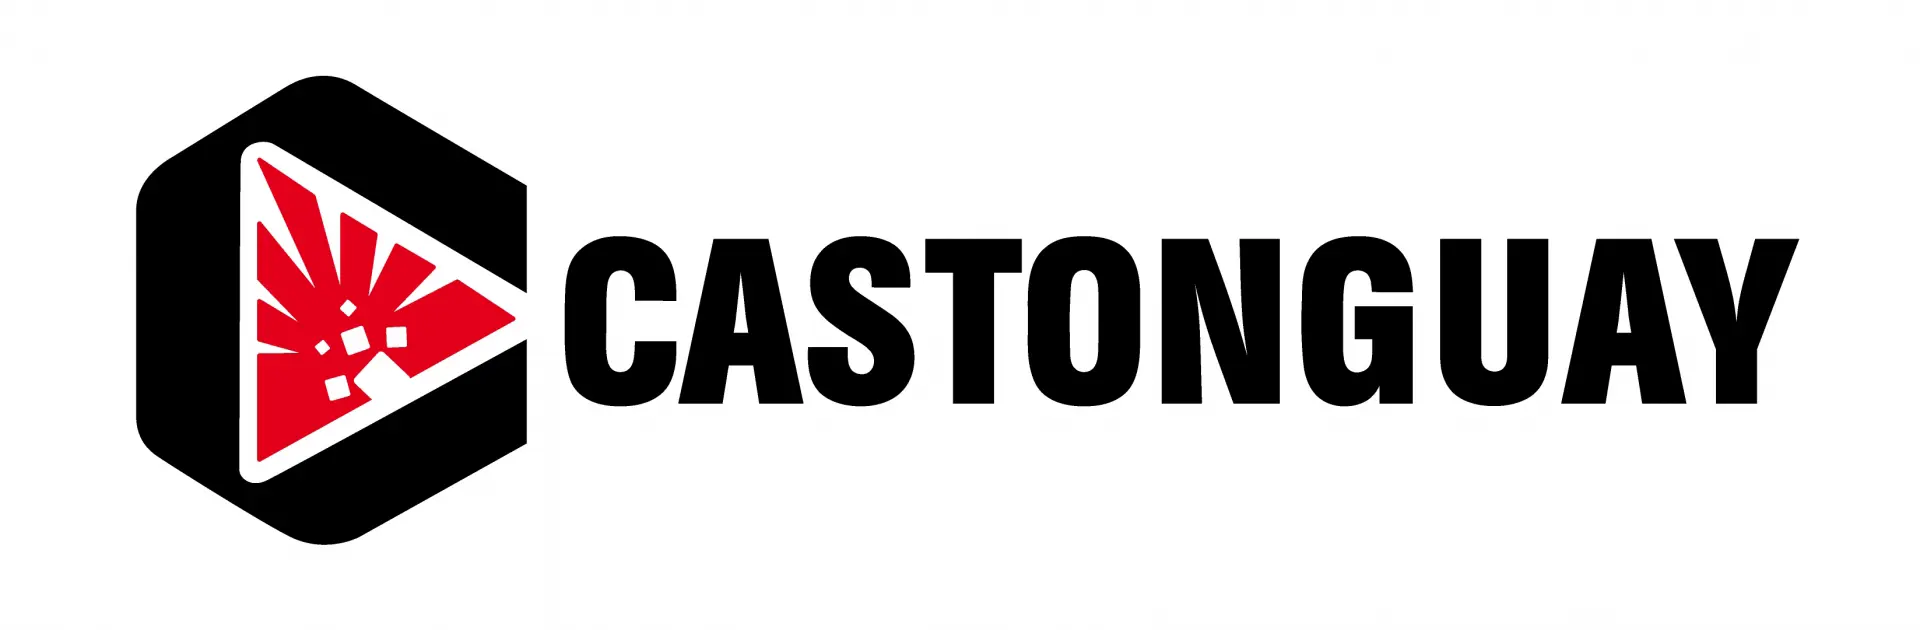 Cataonguay logo